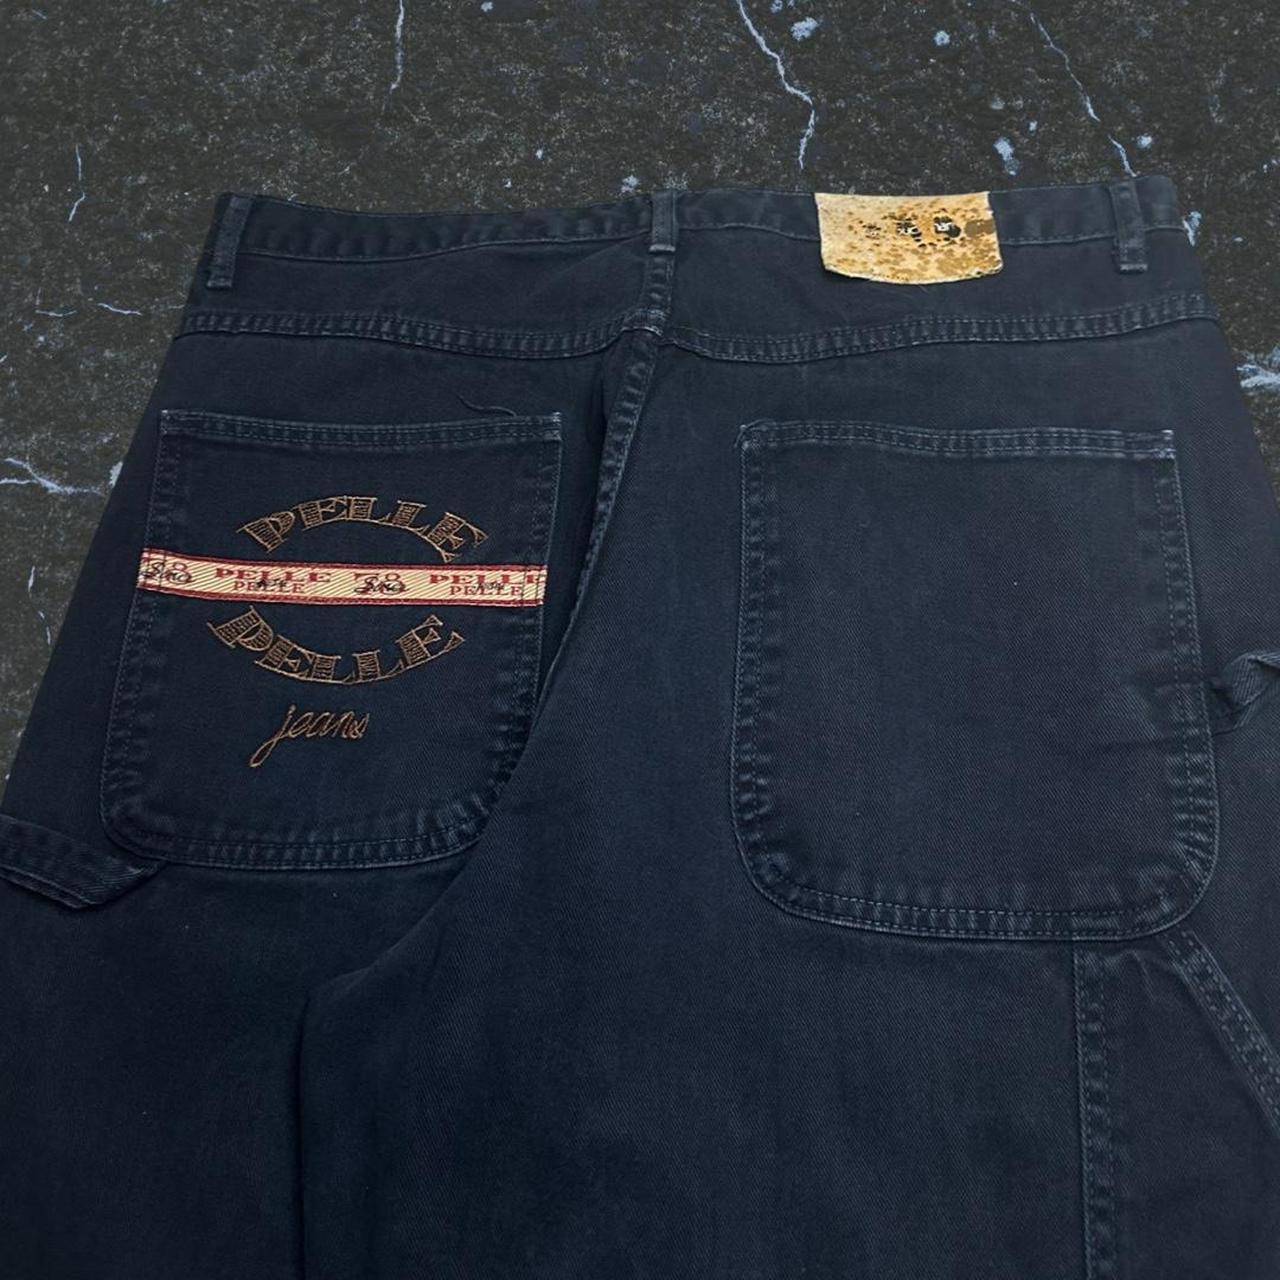 Pelle Pelle navy baggy carpenter jeans, size 36x32.... - Depop